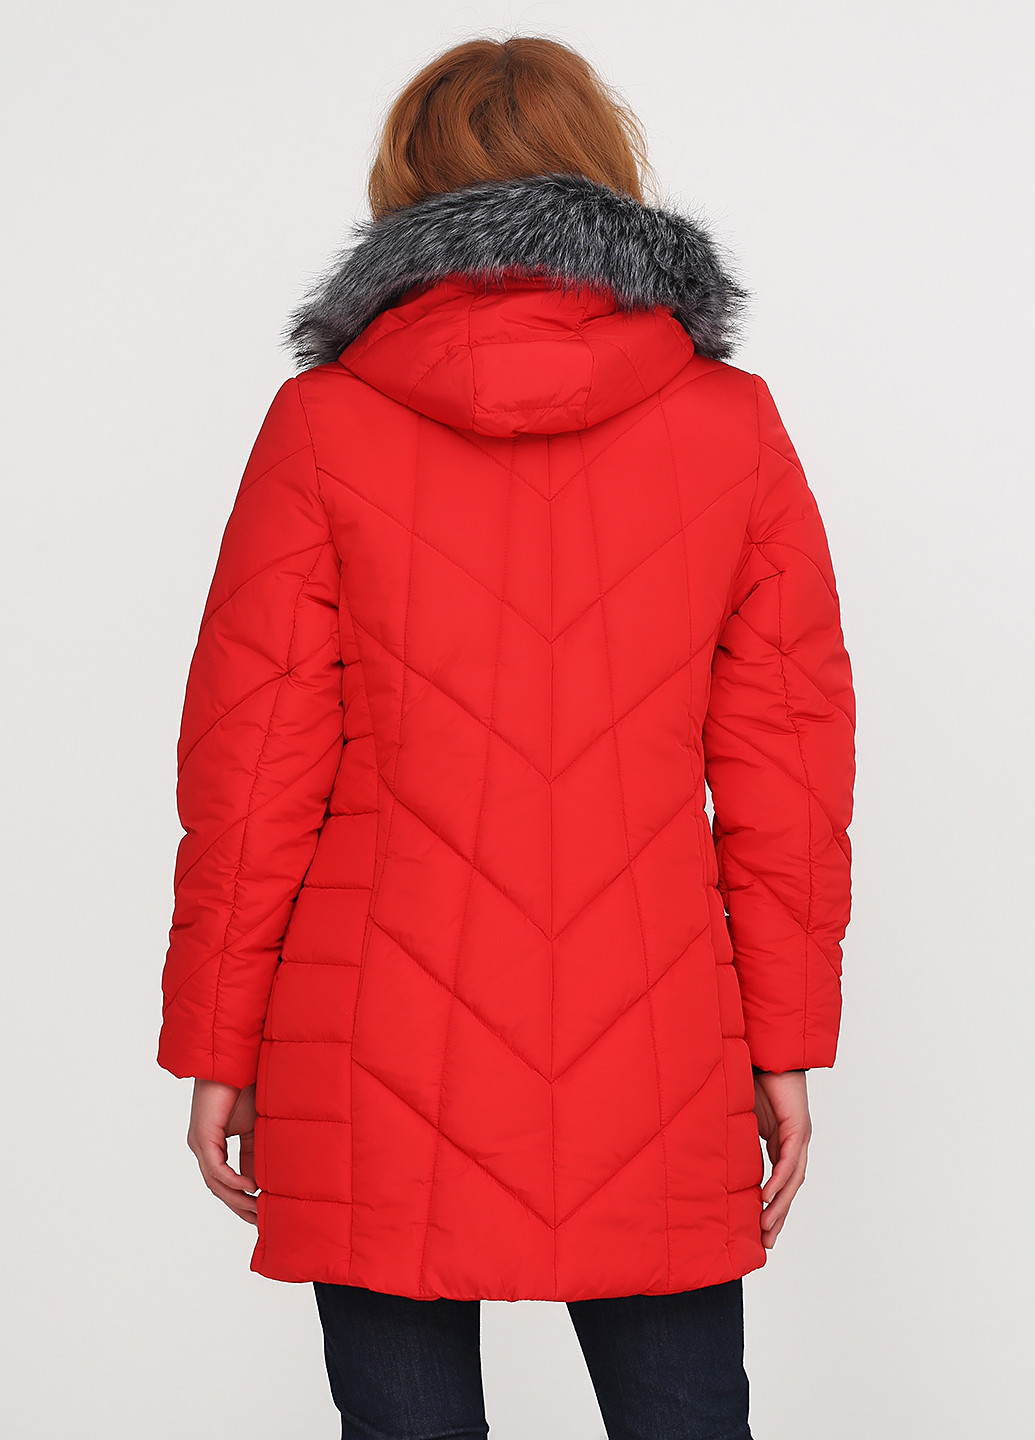 Красная зимняя куртка Westland